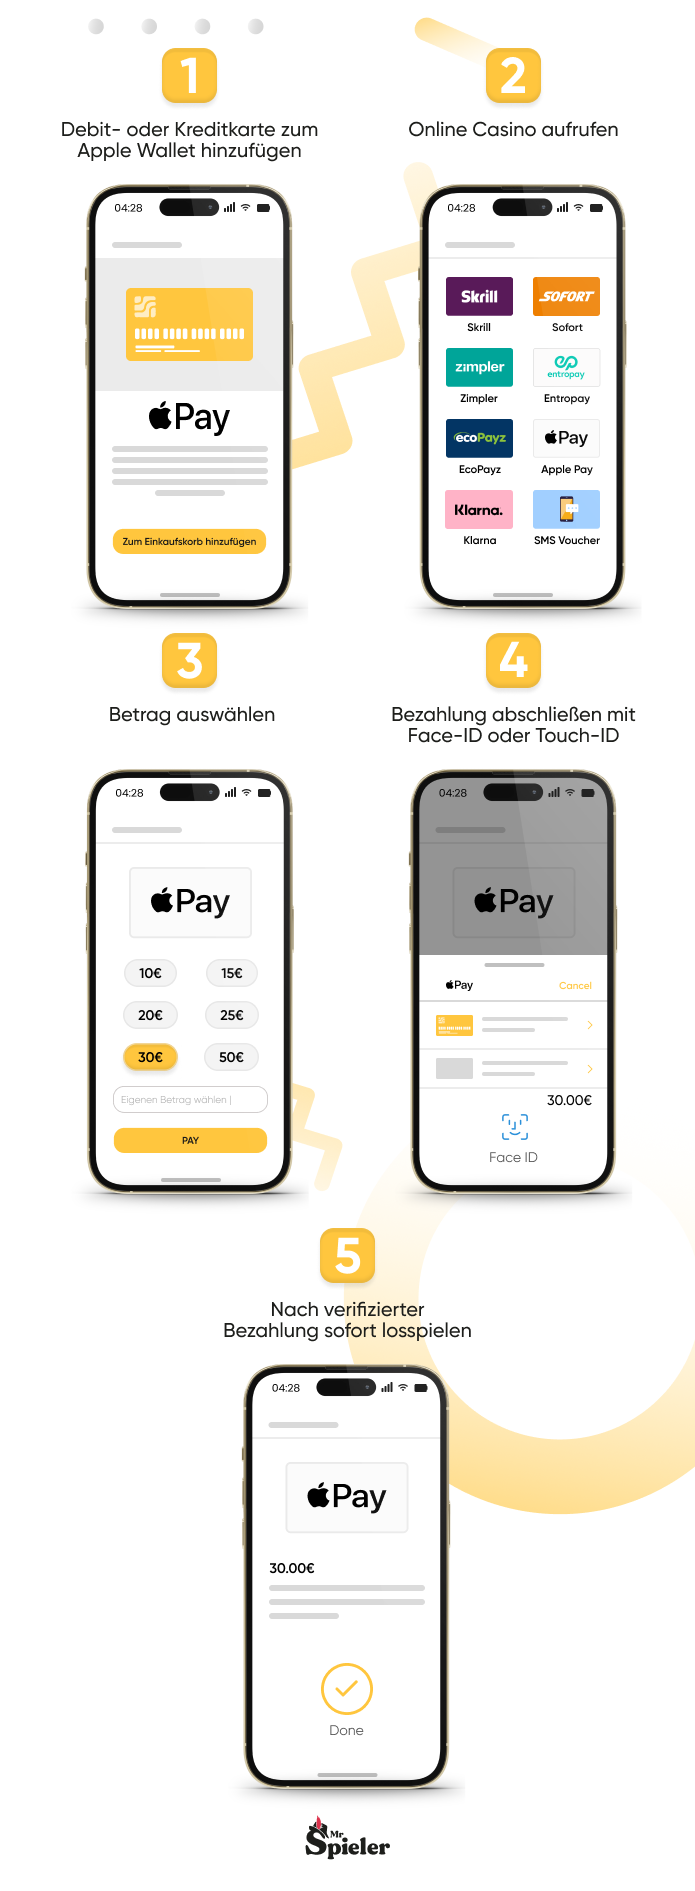 So funktioniert es mit der Einzahlung im Online Casino mit Apple Pay: 1. Kreditkarte zum Wallet hinzufügen, 2. Online Casino aufrufen, 3. Betrag auswählen, 4. Bezahlvorgang mit Face-ID abschließen